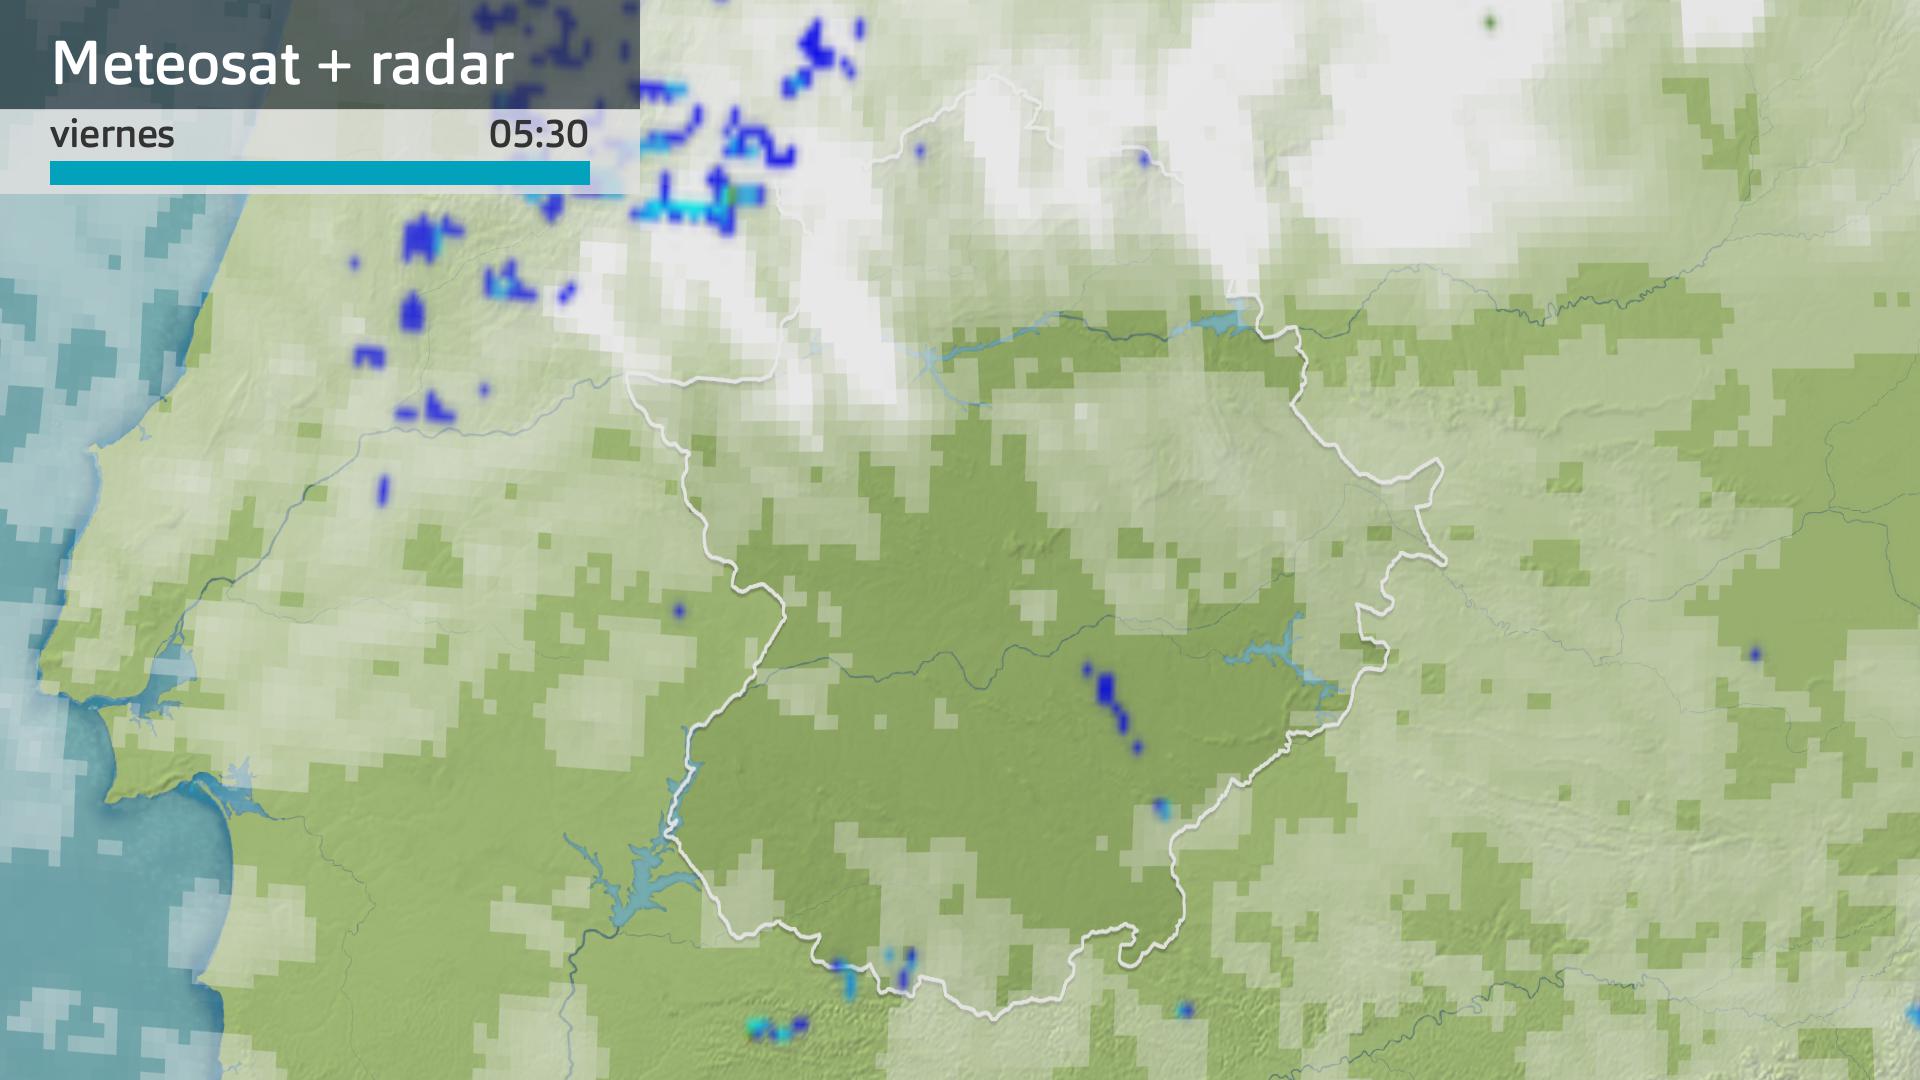 Imagen del Meteosat + radar meteorológico viernes 20 de octubre 5:30 h.